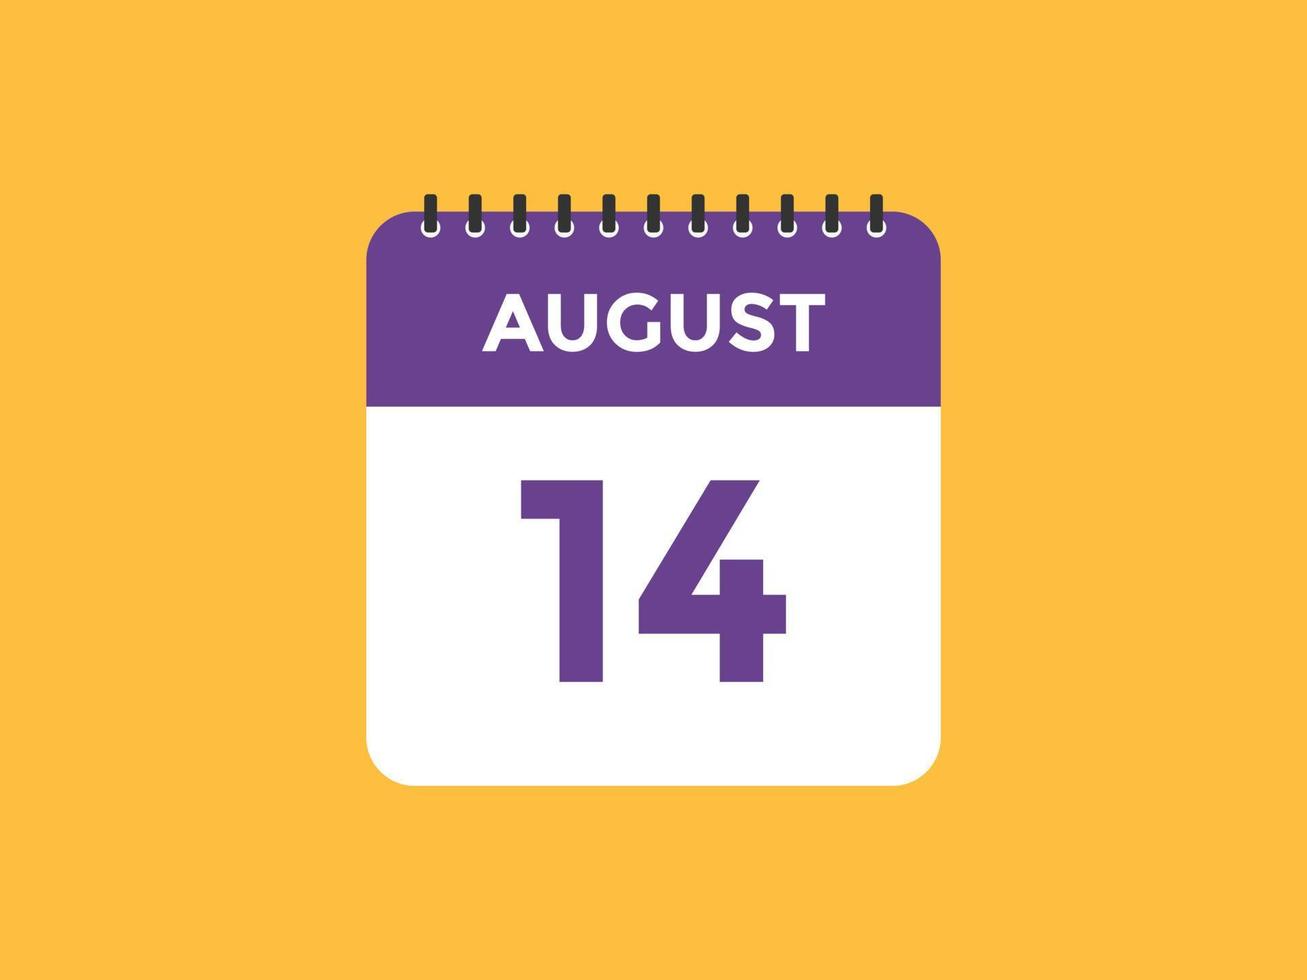 rappel du calendrier du 14 août. Modèle d'icône de calendrier quotidien du 14 août. modèle de conception d'icône calendrier 14 août. illustration vectorielle vecteur